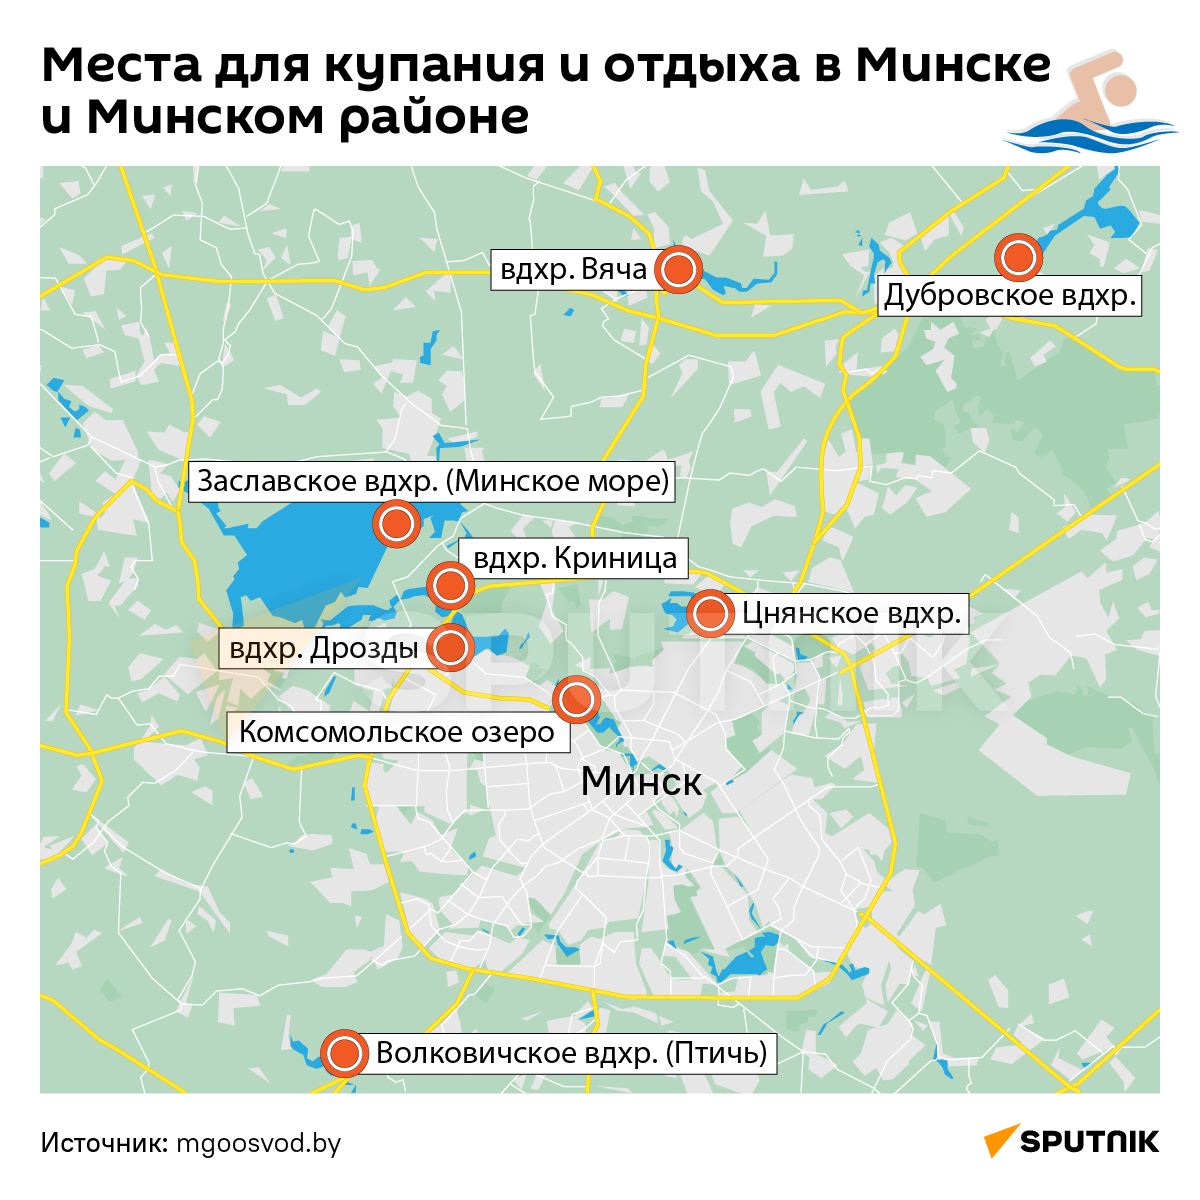 Пляжи в Минске и пригороде: где можно покупаться и позагорать - Sputnik Беларусь